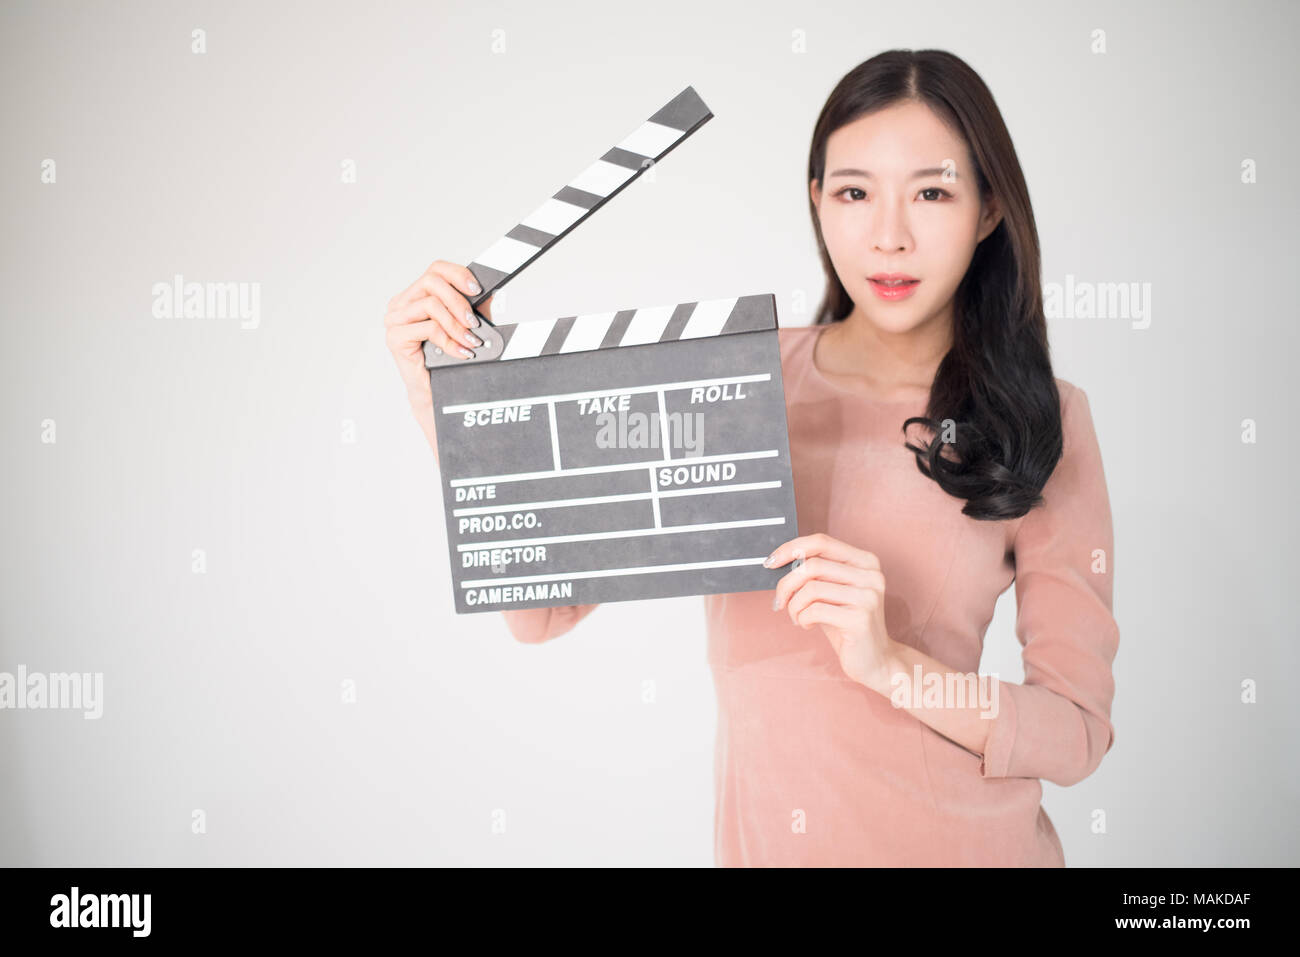 Sian Frau mit filmklappe Board auf weißem Hintergrund. Kinematografie, Kommunikation, Kultur, Casting, Audition, Film Produktion Konzept. Stockfoto